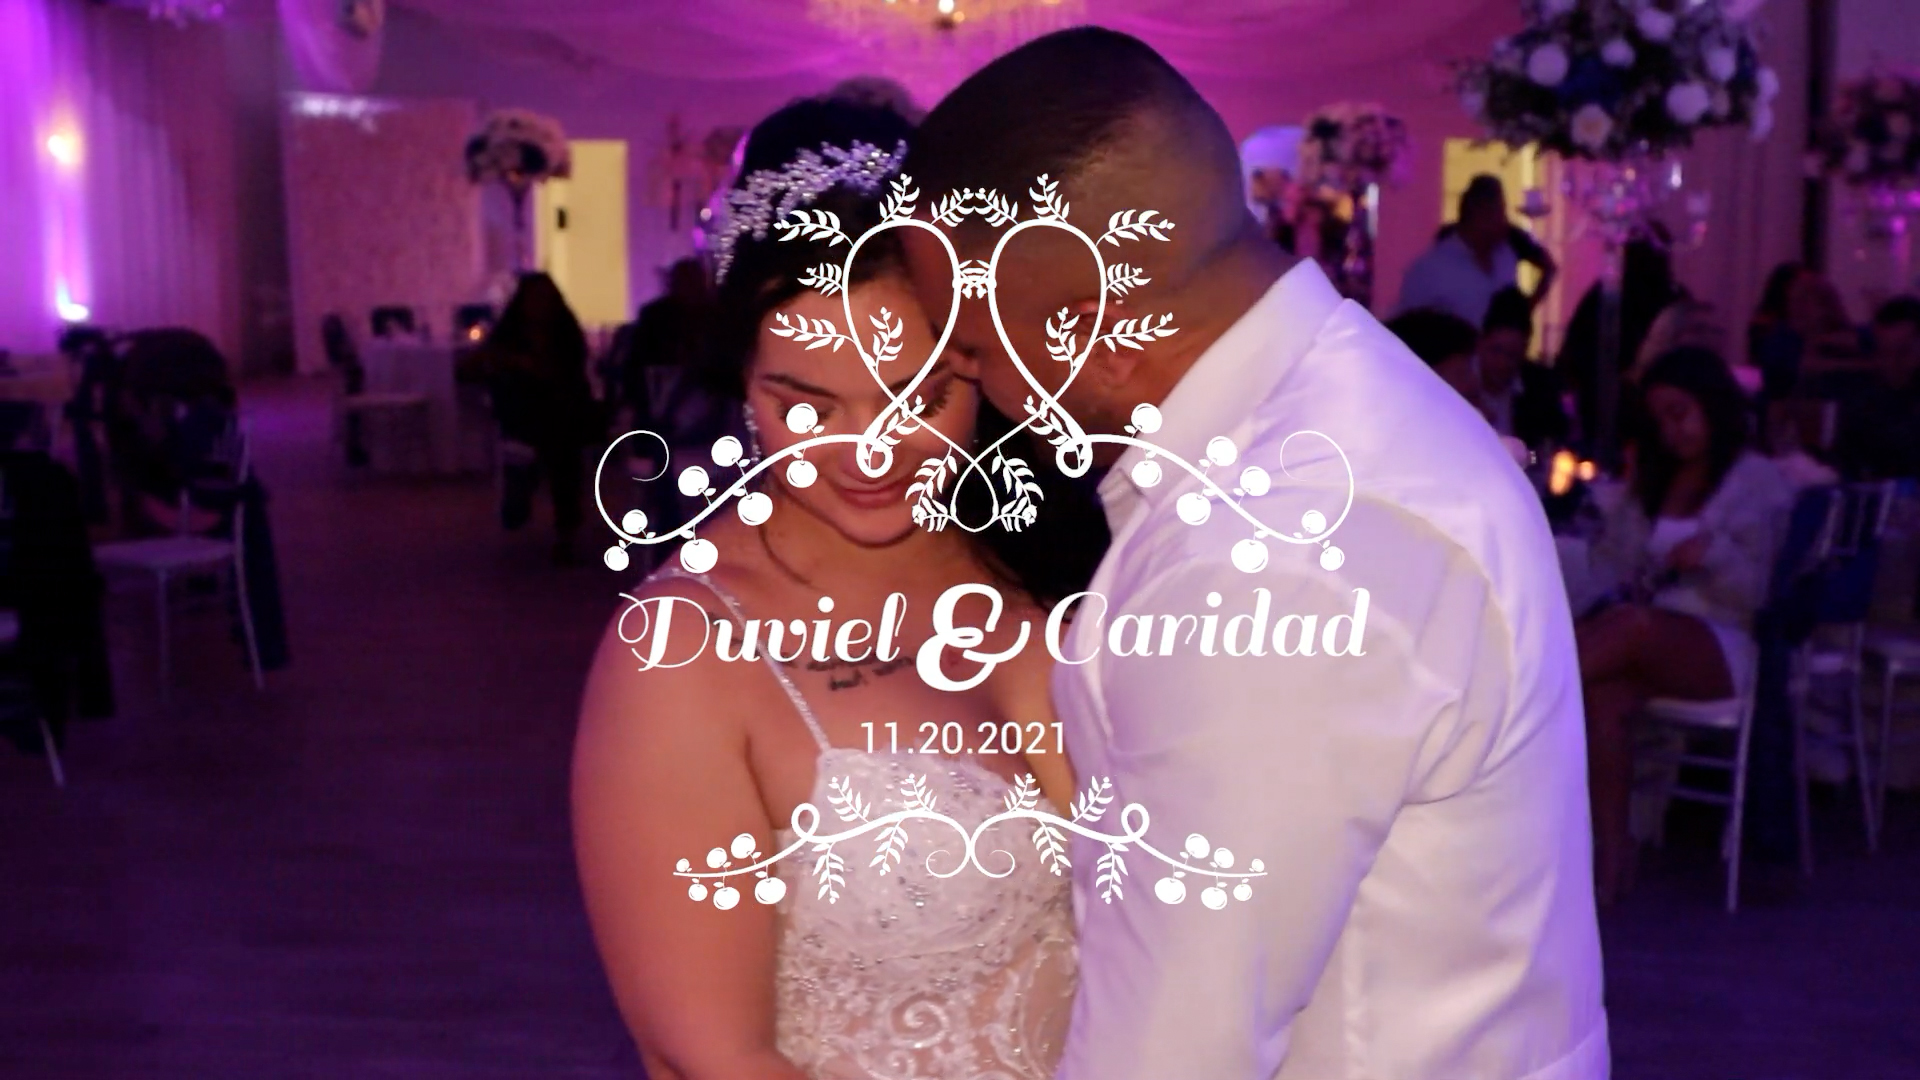 Duviel & Caridad Wedding – Trailer